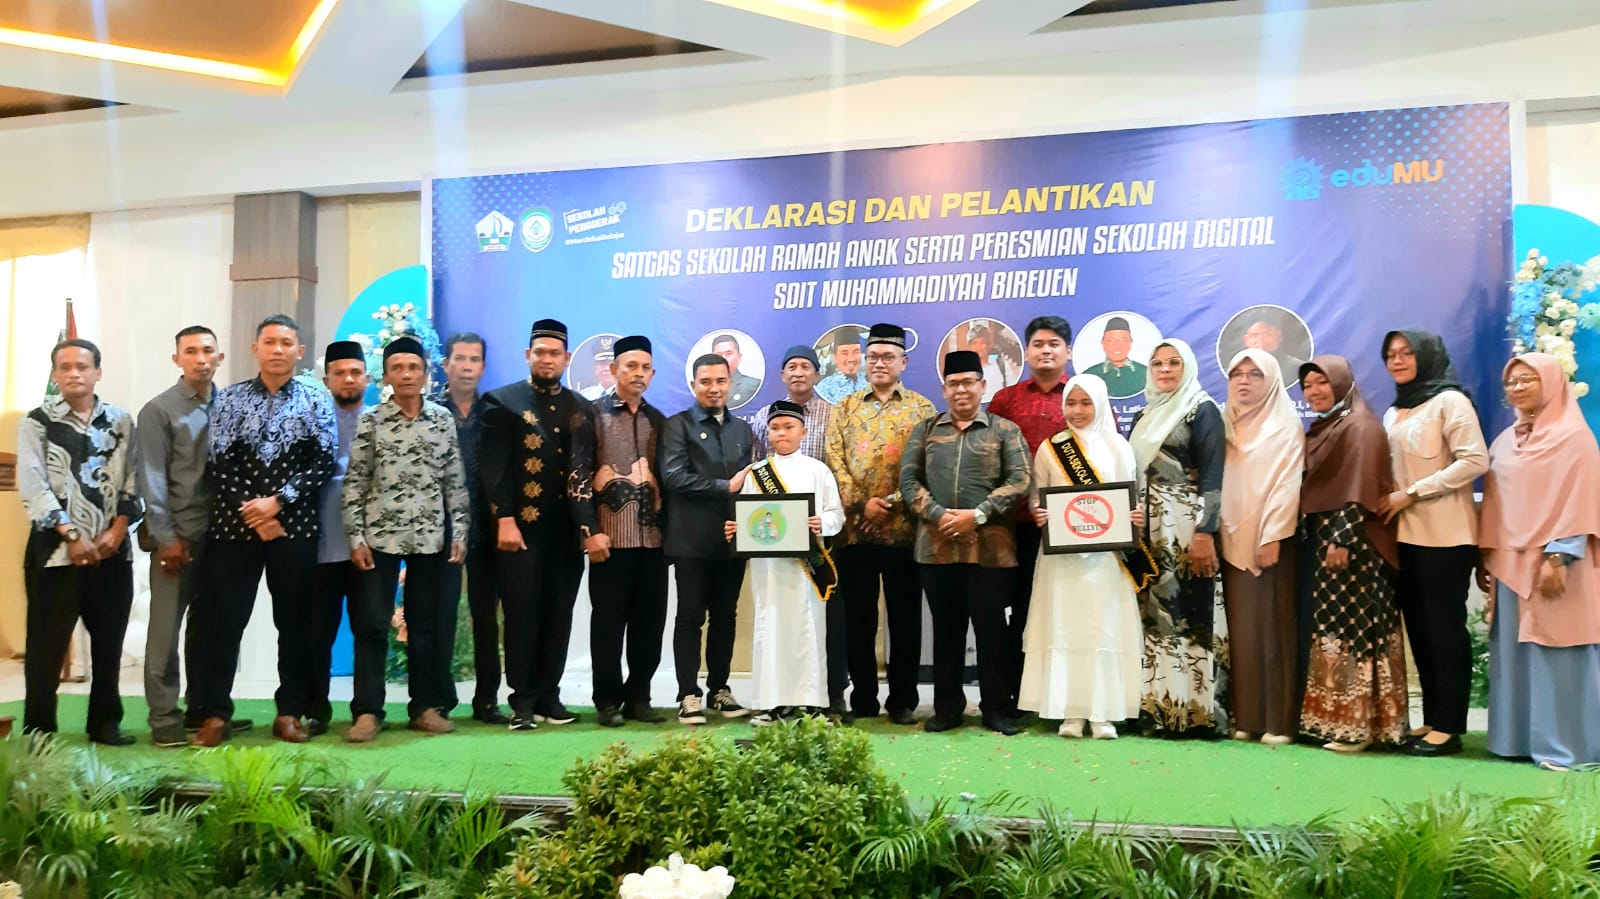 Kerjasama dengan Dinas BPMGPKB, SDIT Muhammadiyah Bireuen Deklarasikan Sekolah Ramah Anak